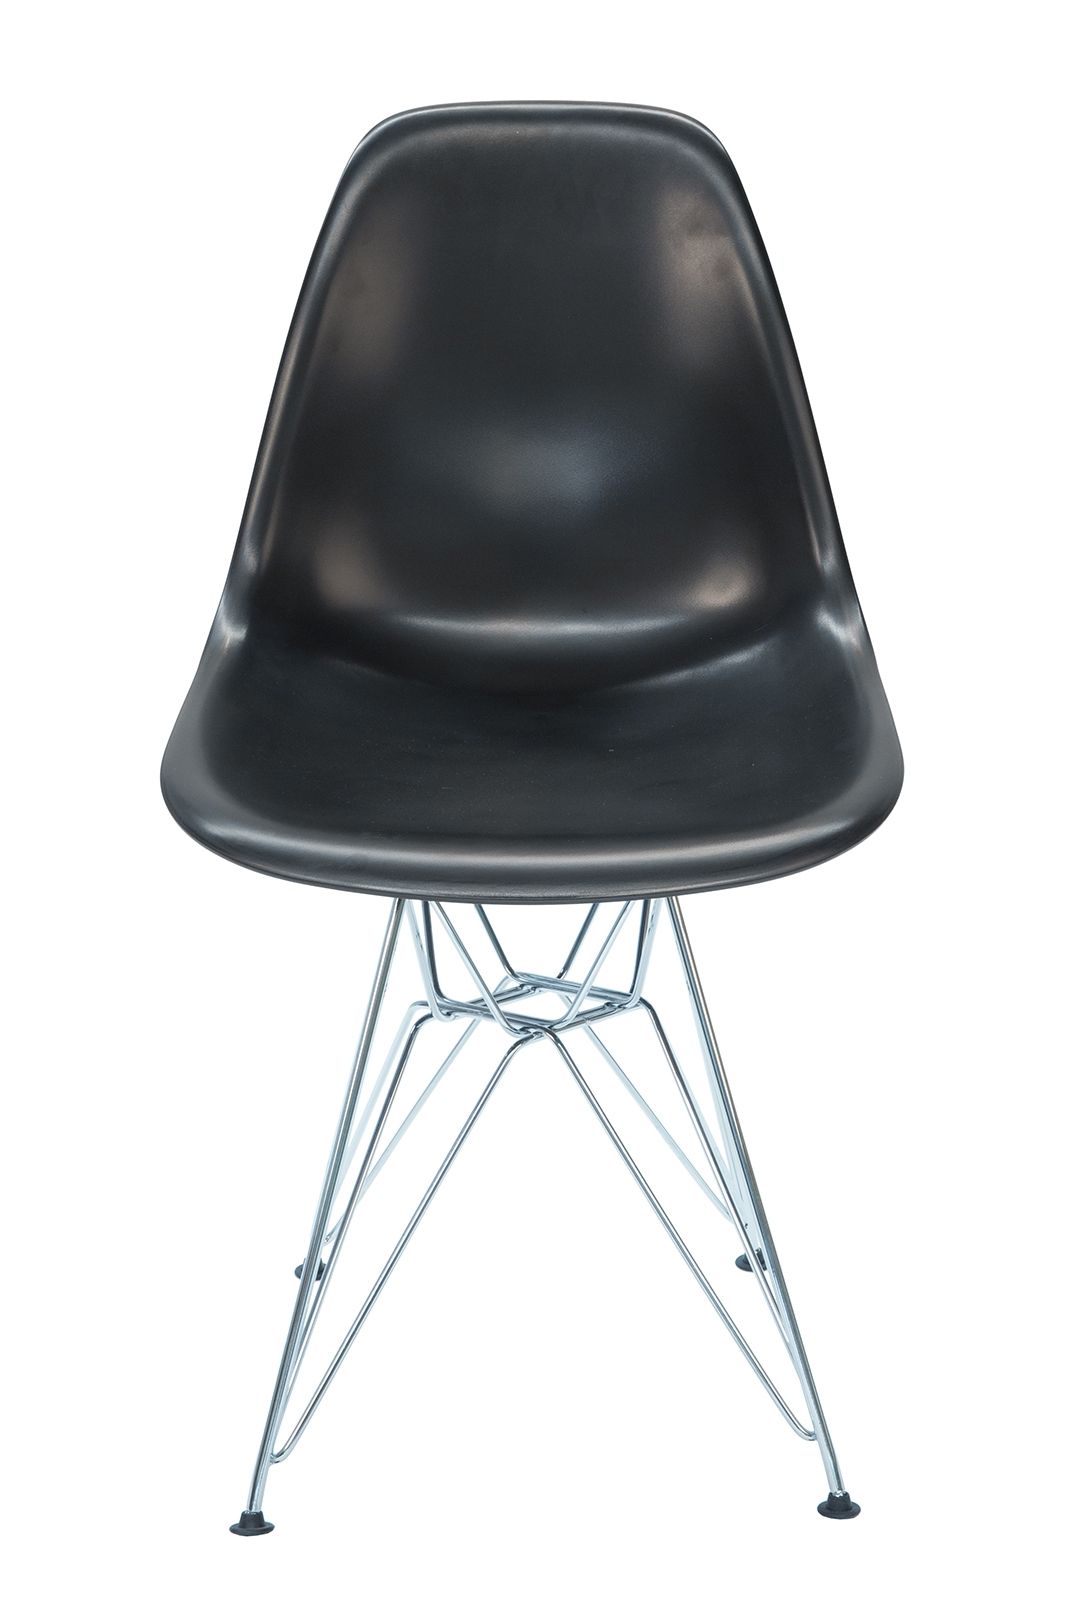 Replica Eames DSR Eiffel Chair Black & Chrome